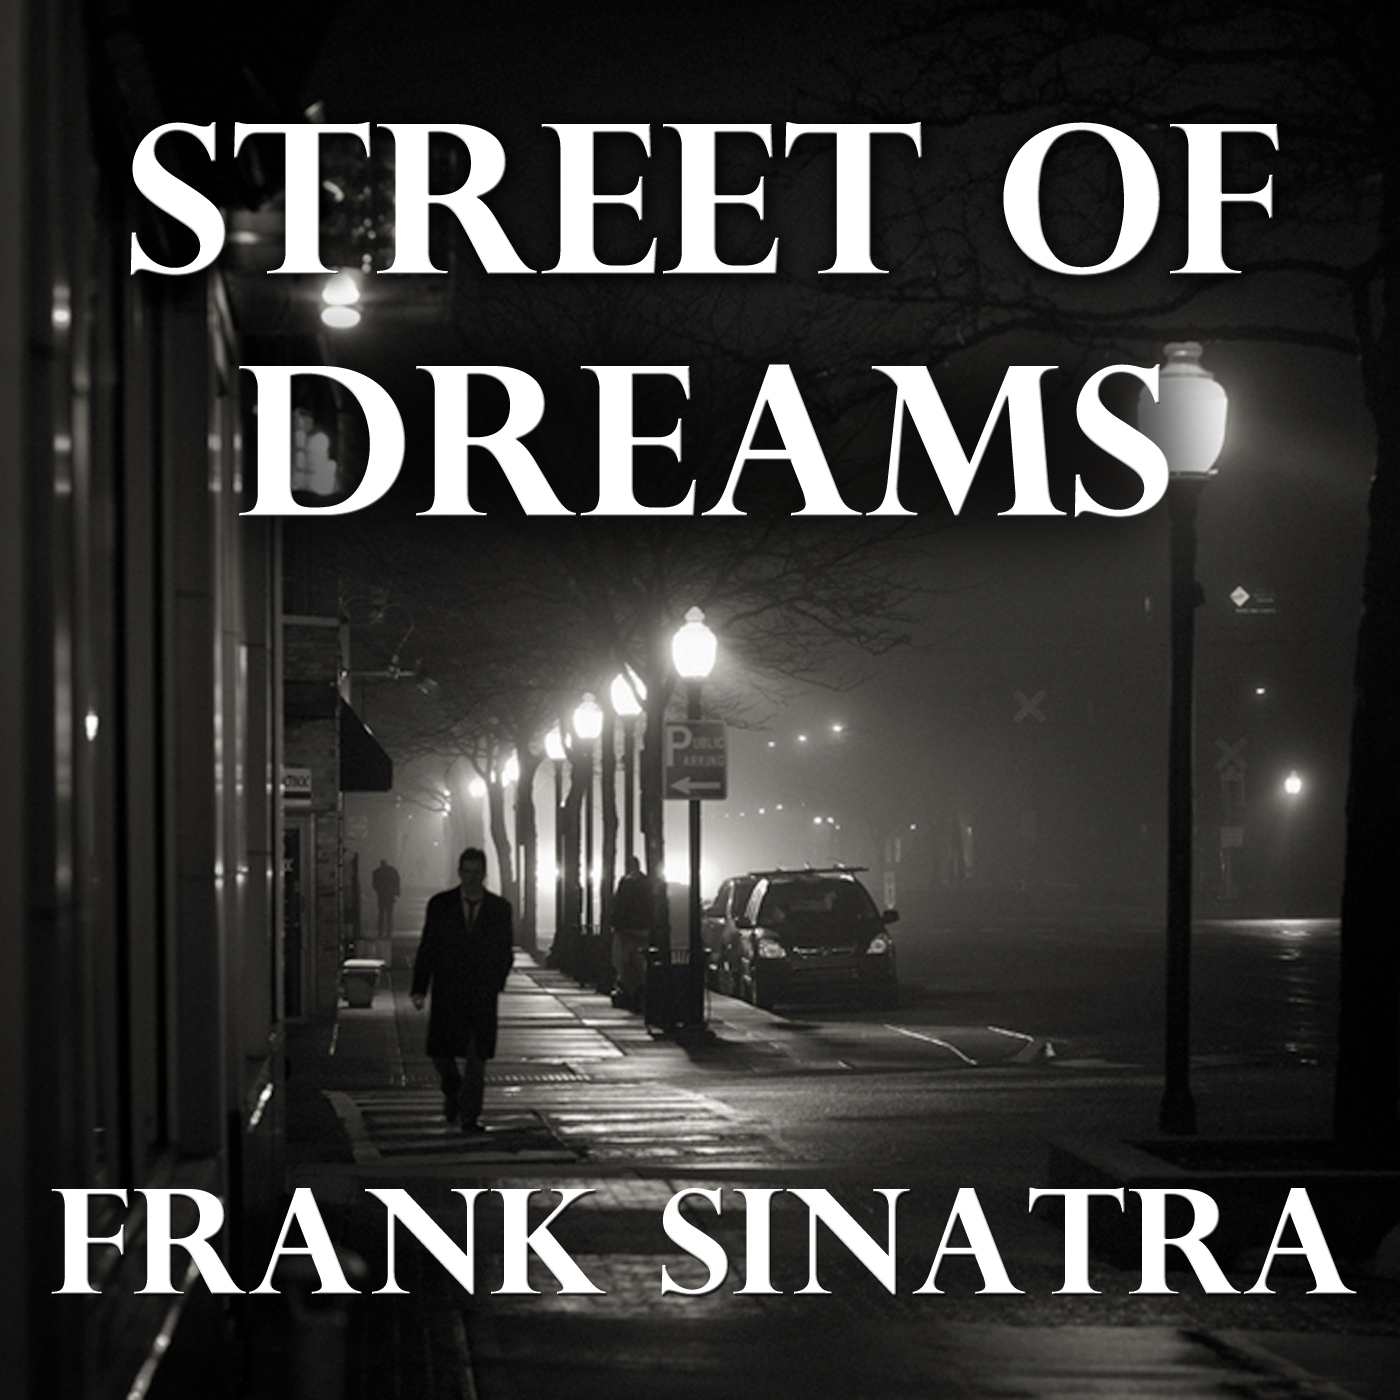 Street Of Dreams